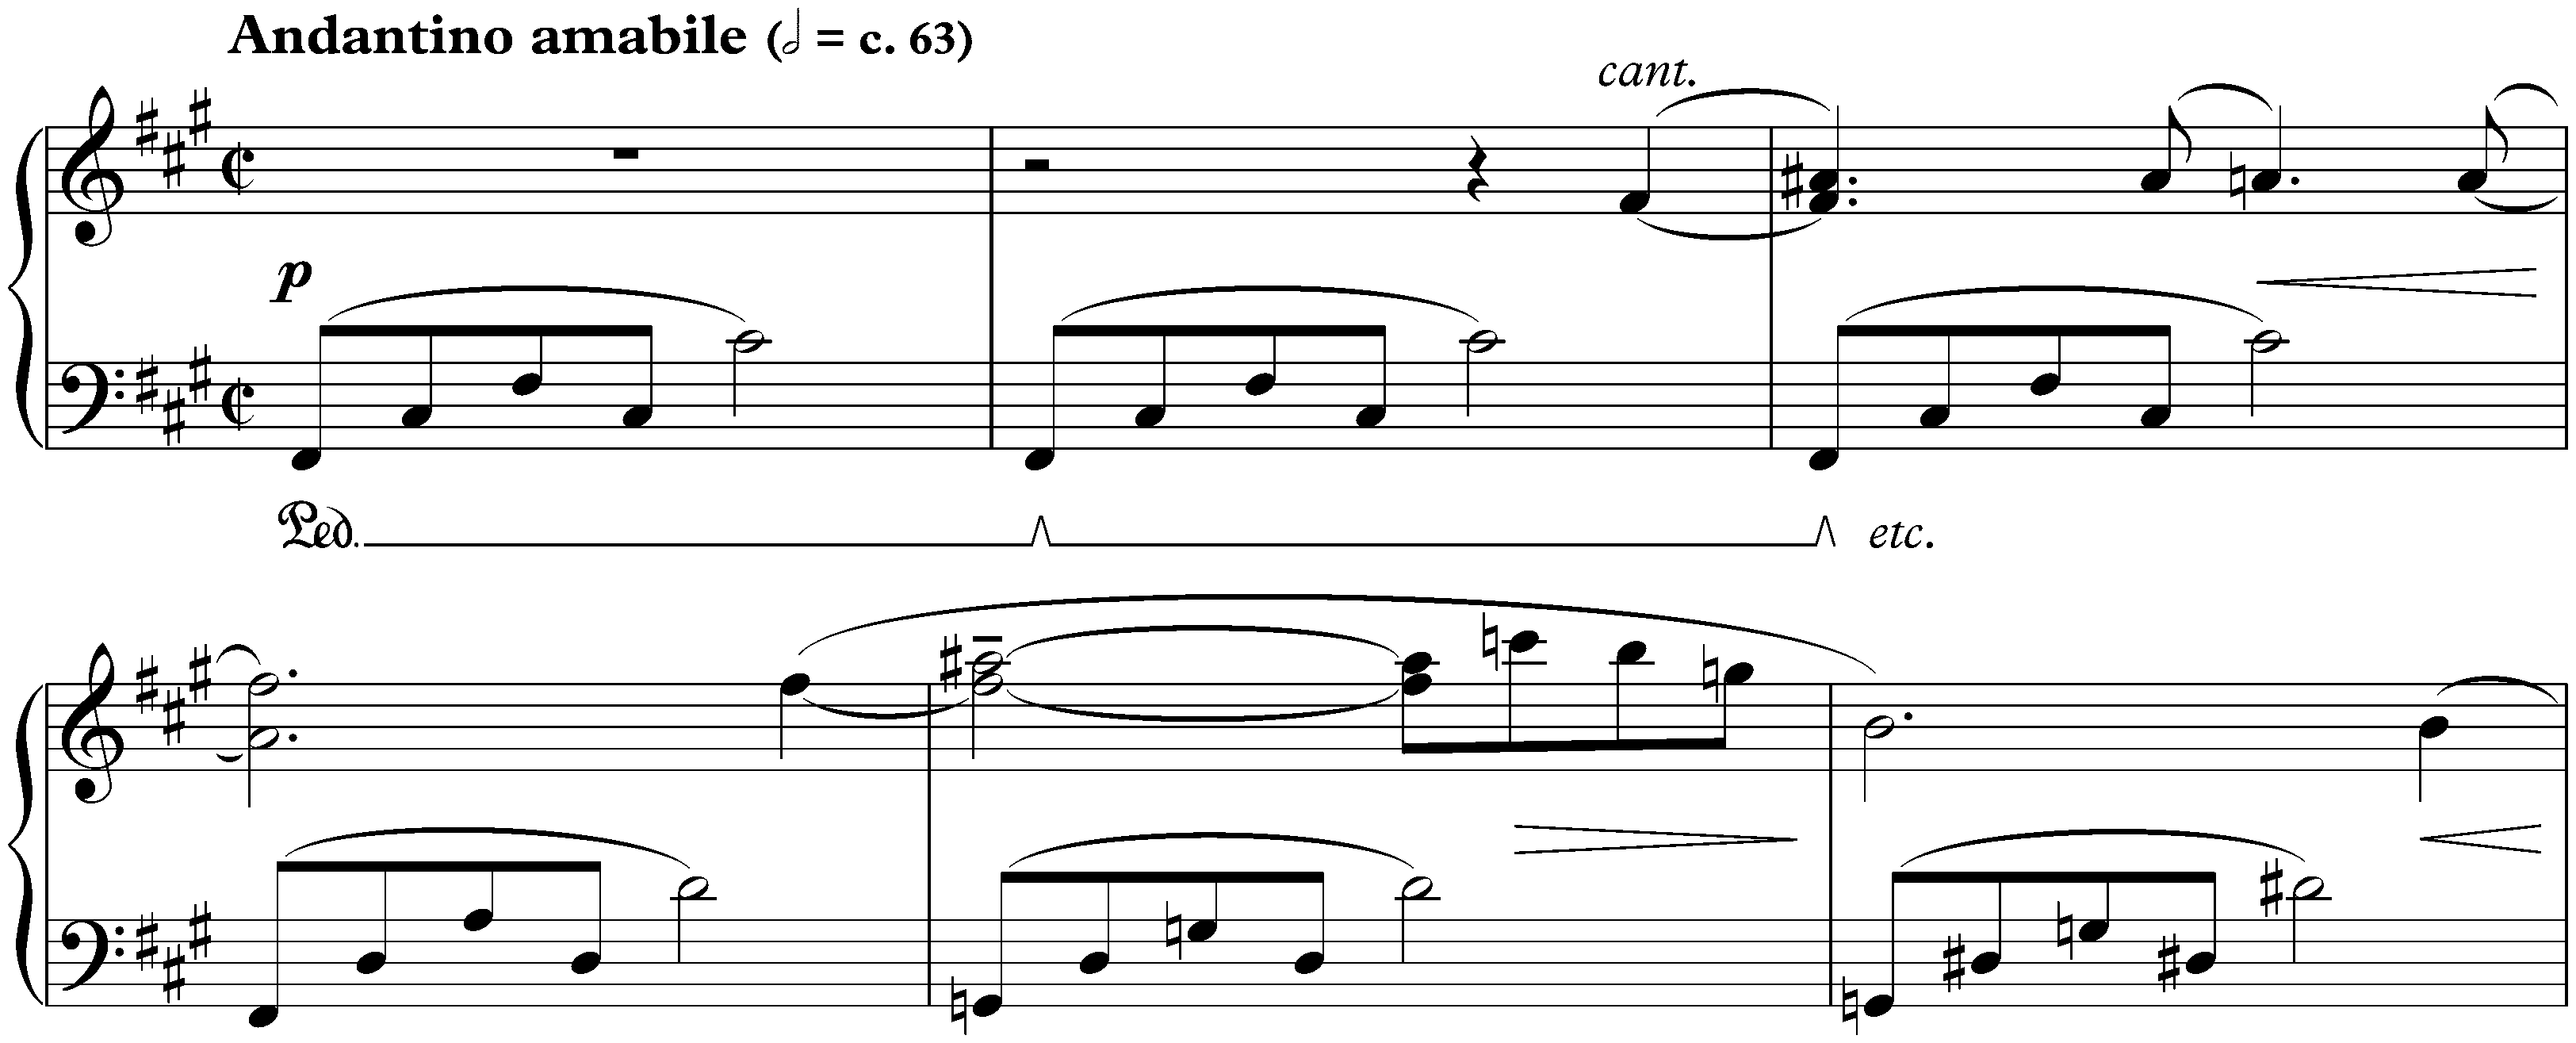 Five Bagatelles, op. 9; 2. Andantino amabile